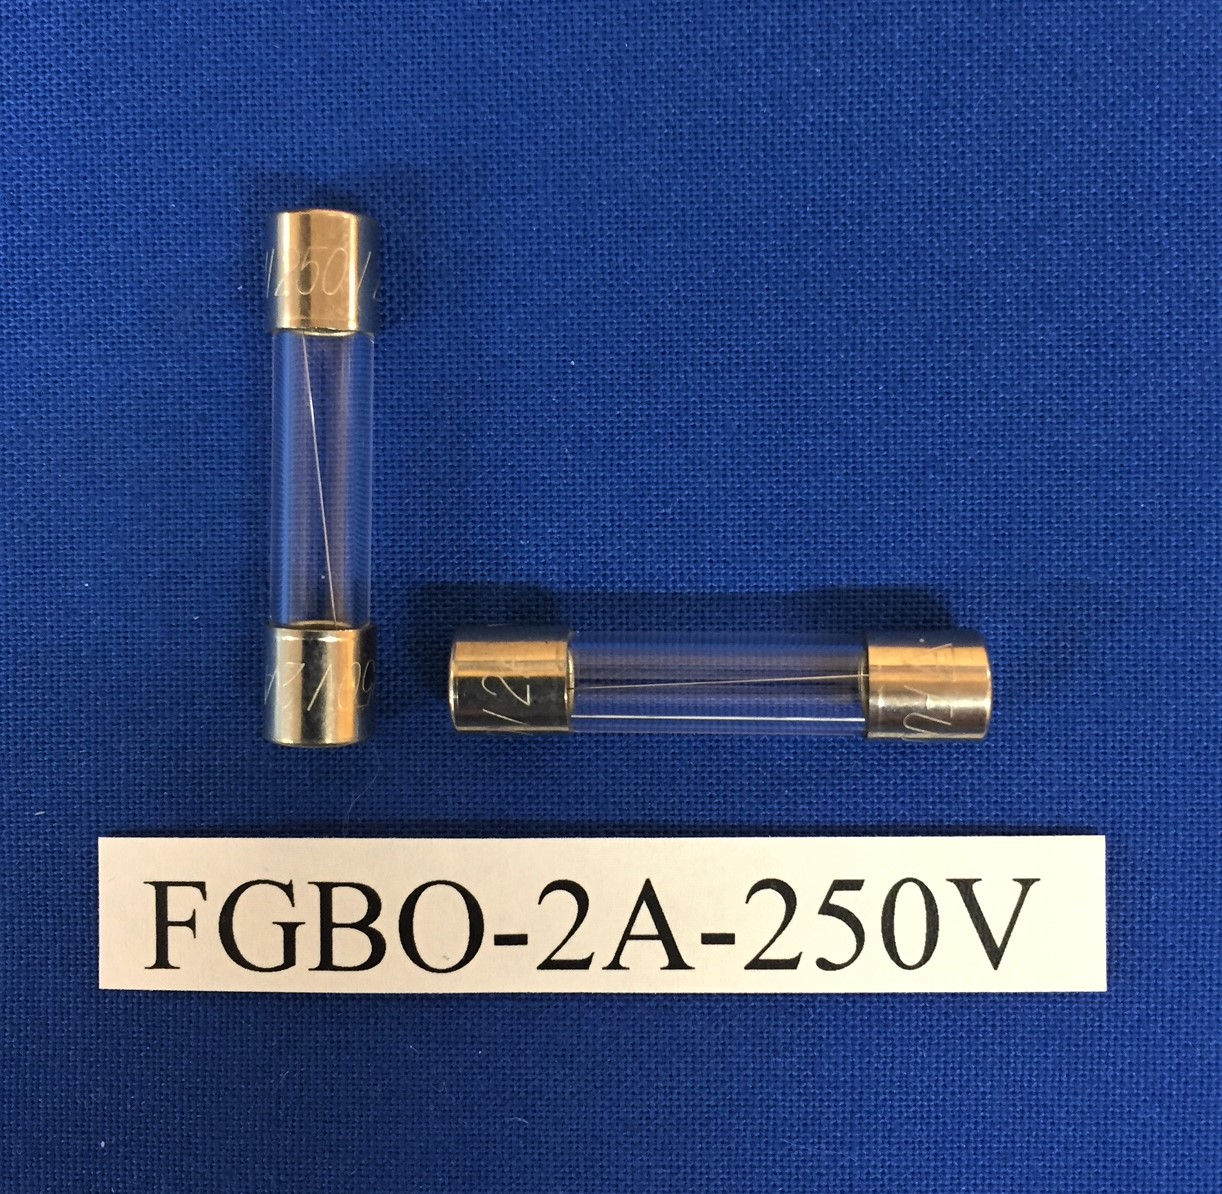 FGBO-2A-250V - National Fuse